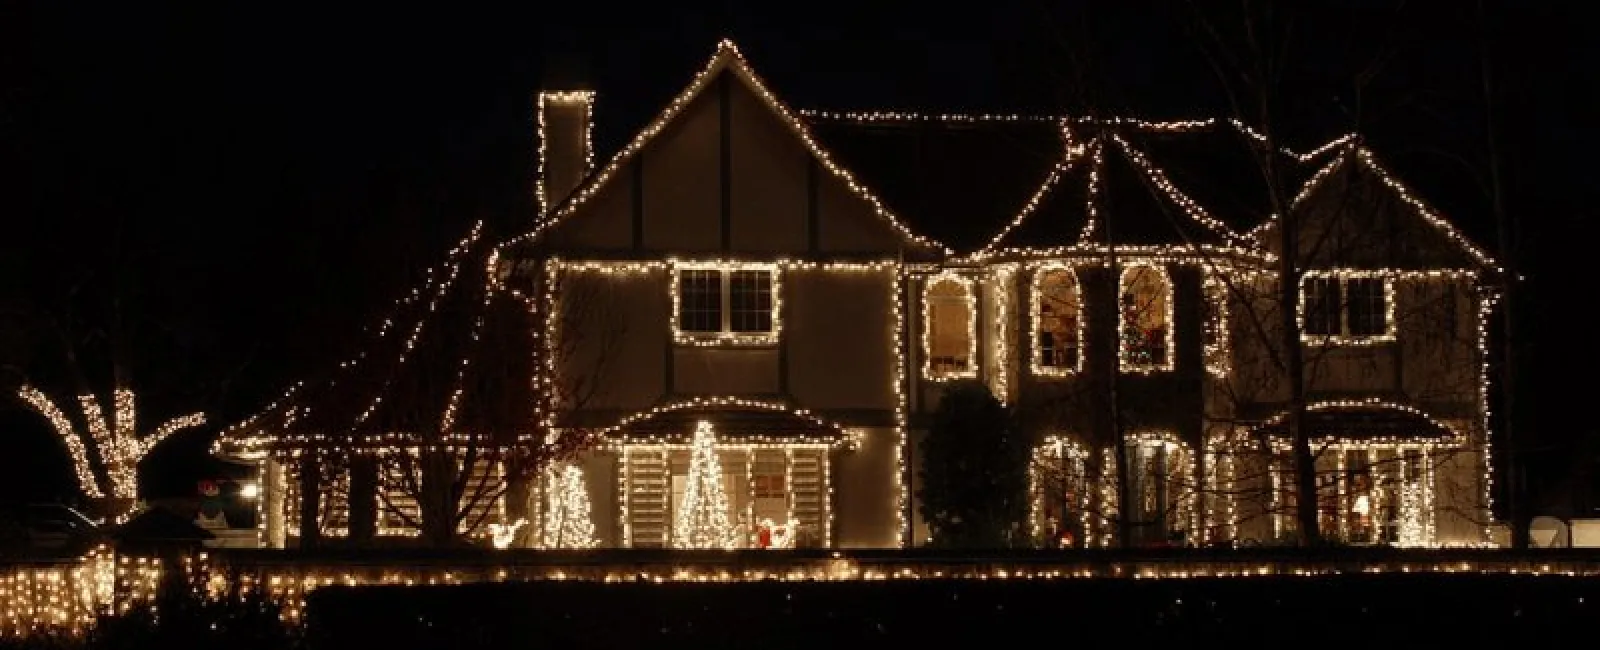 How to Hang Christmas Lights This Holiday Season